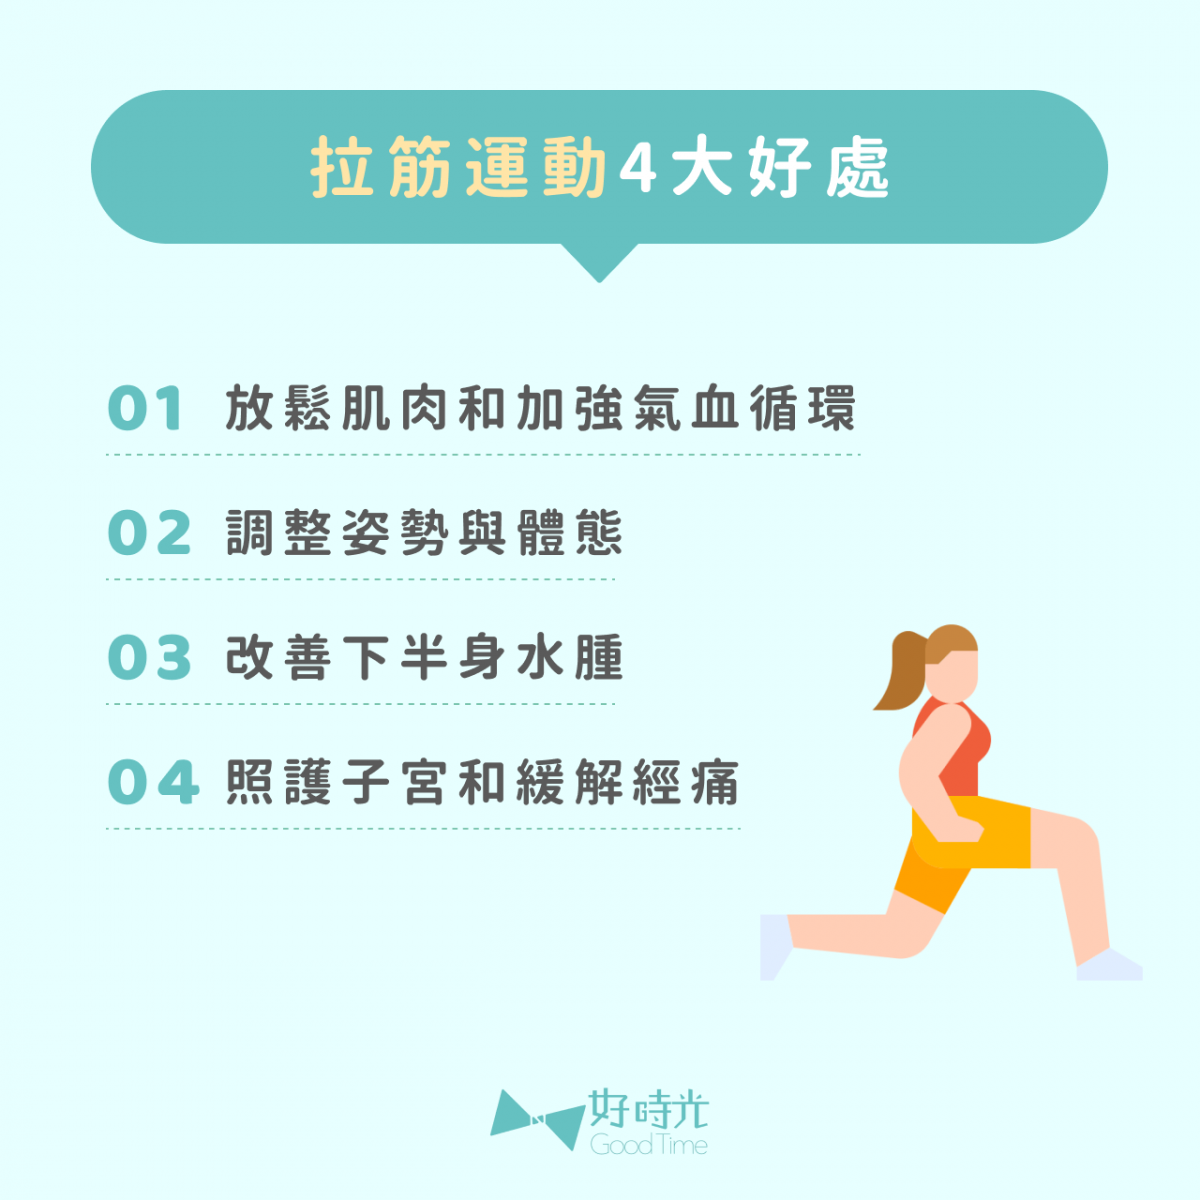 拉筋運動4大好處：1.放鬆肌肉和加強氣血循環 2.調整姿勢與體態 3.改善下半身水腫 4.照護子宮和緩解經痛